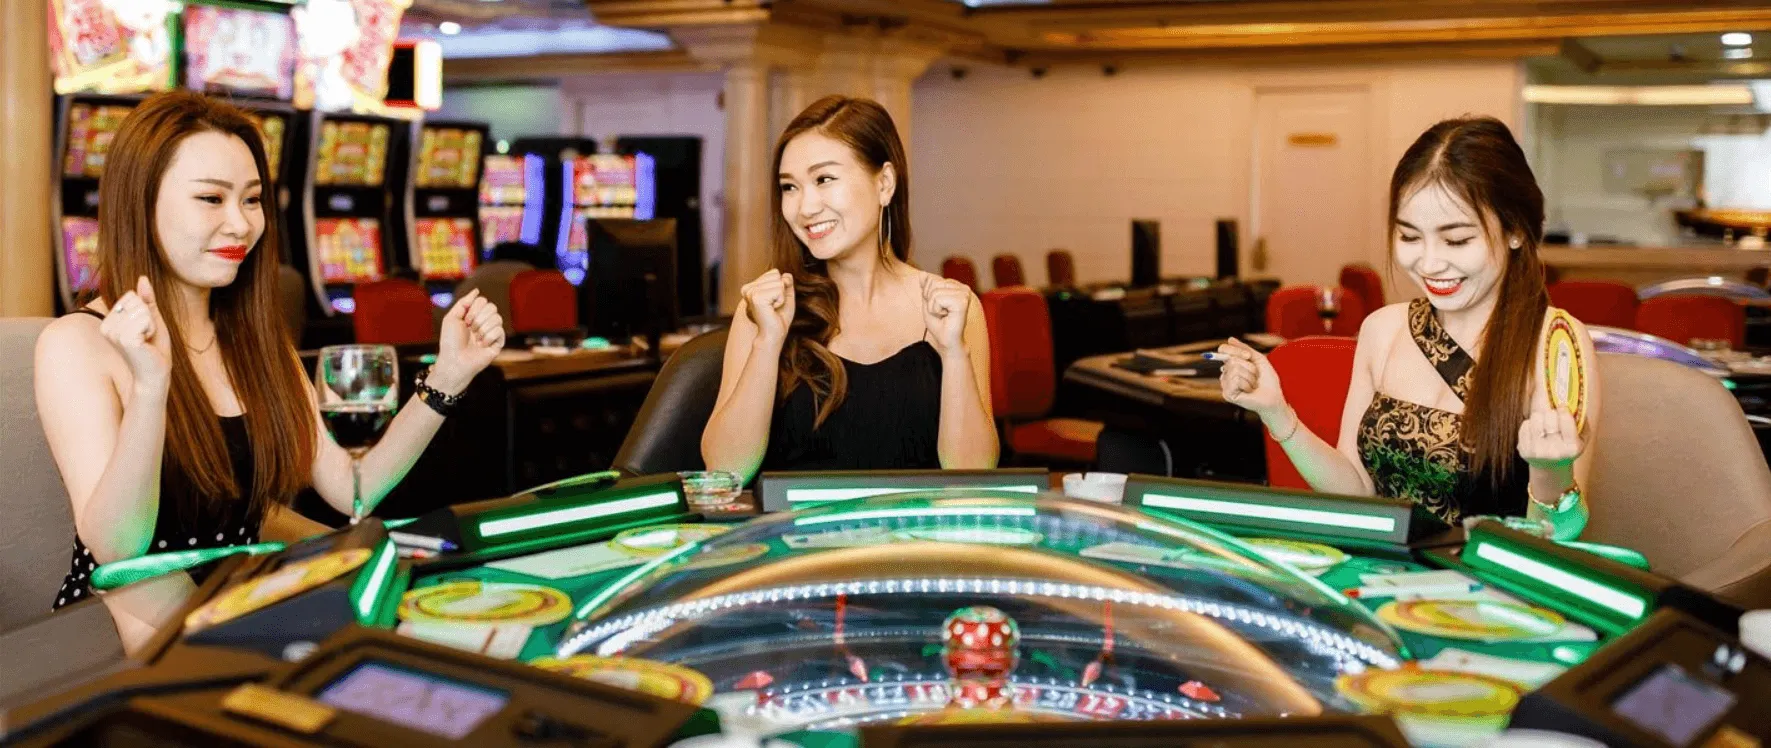 Kết luận: Cách chọn sòng bạc trực tuyến tốt nhất để chơi bằng tiền thật tại Việt Nam